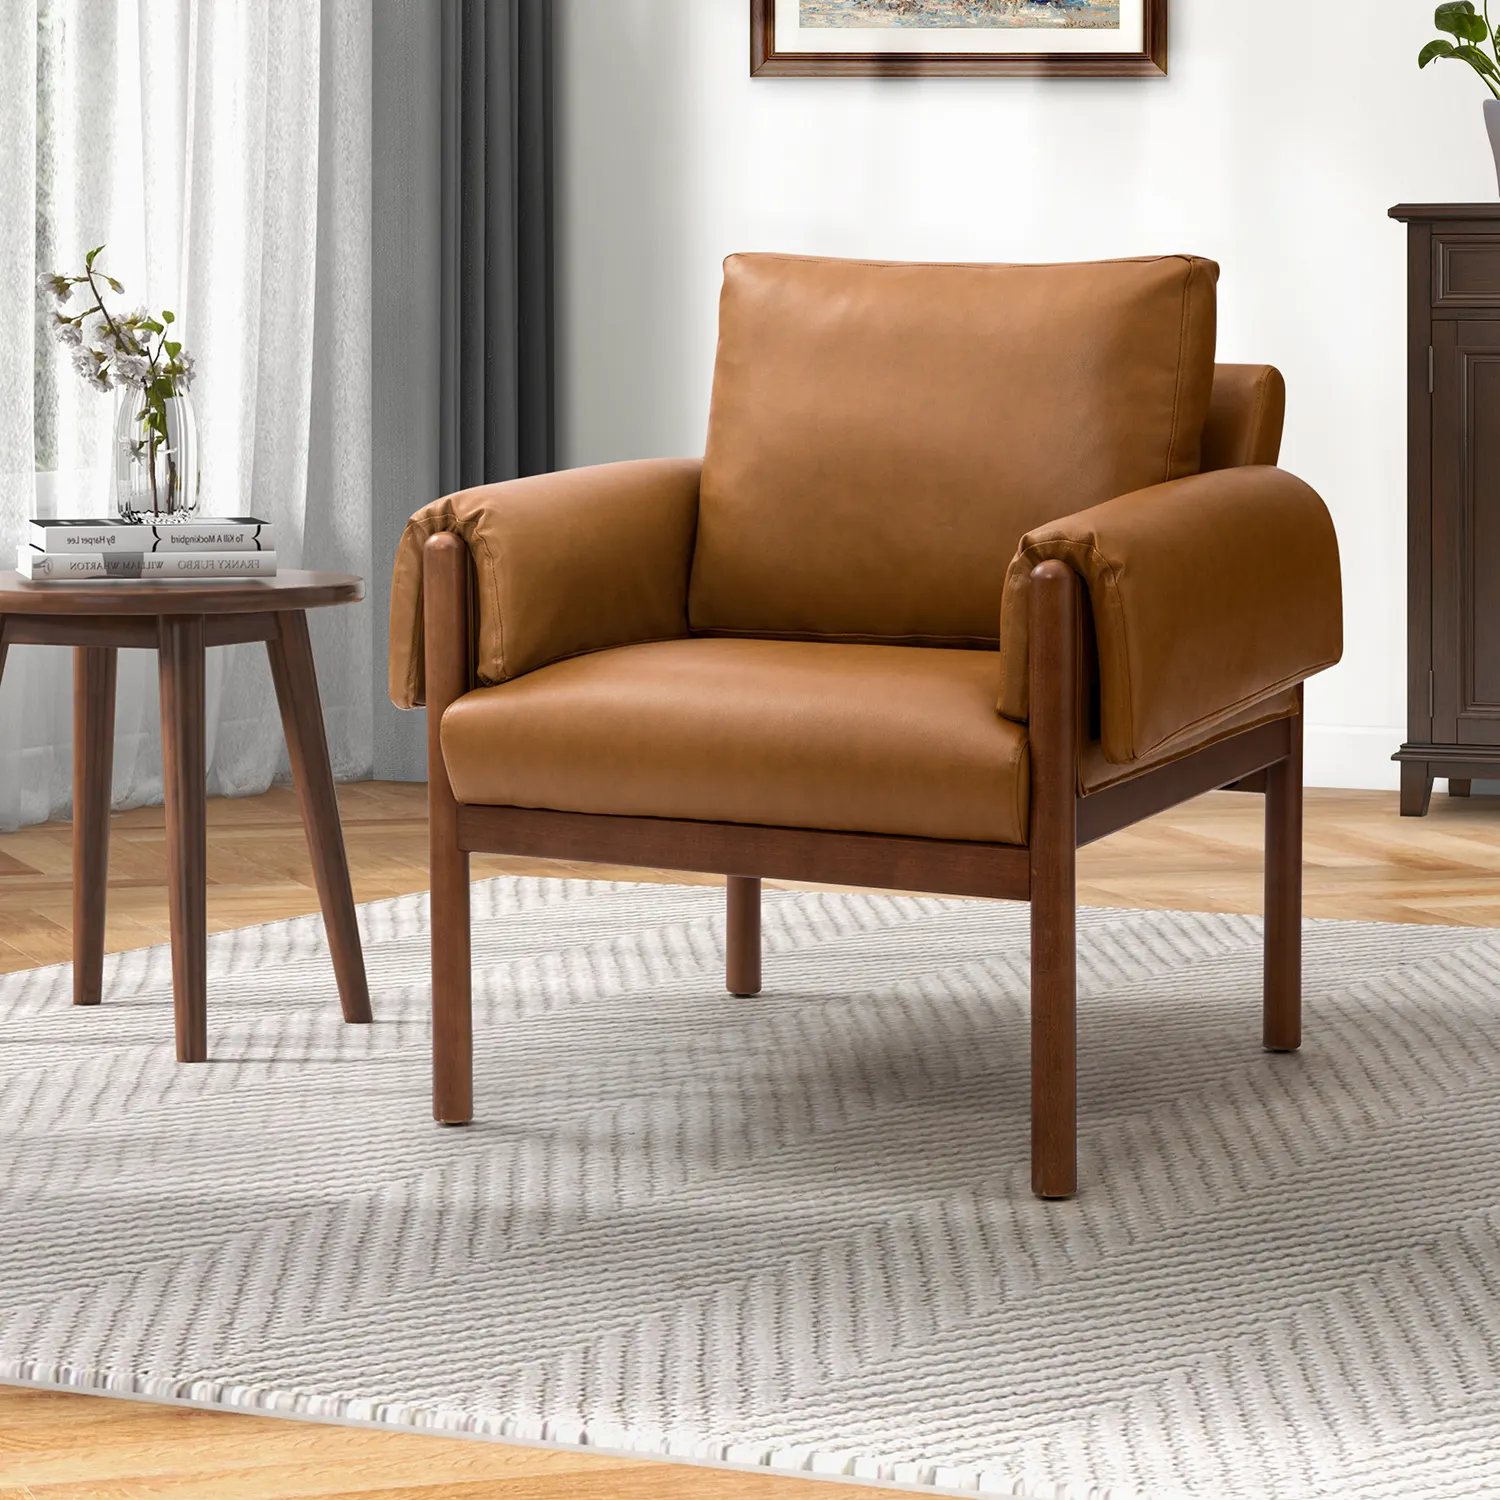 Großhandel Akzent Stühle Möbel Wohnzimmer Moderne Sessel Einzels ofa Luxus Samt Lounge Chair